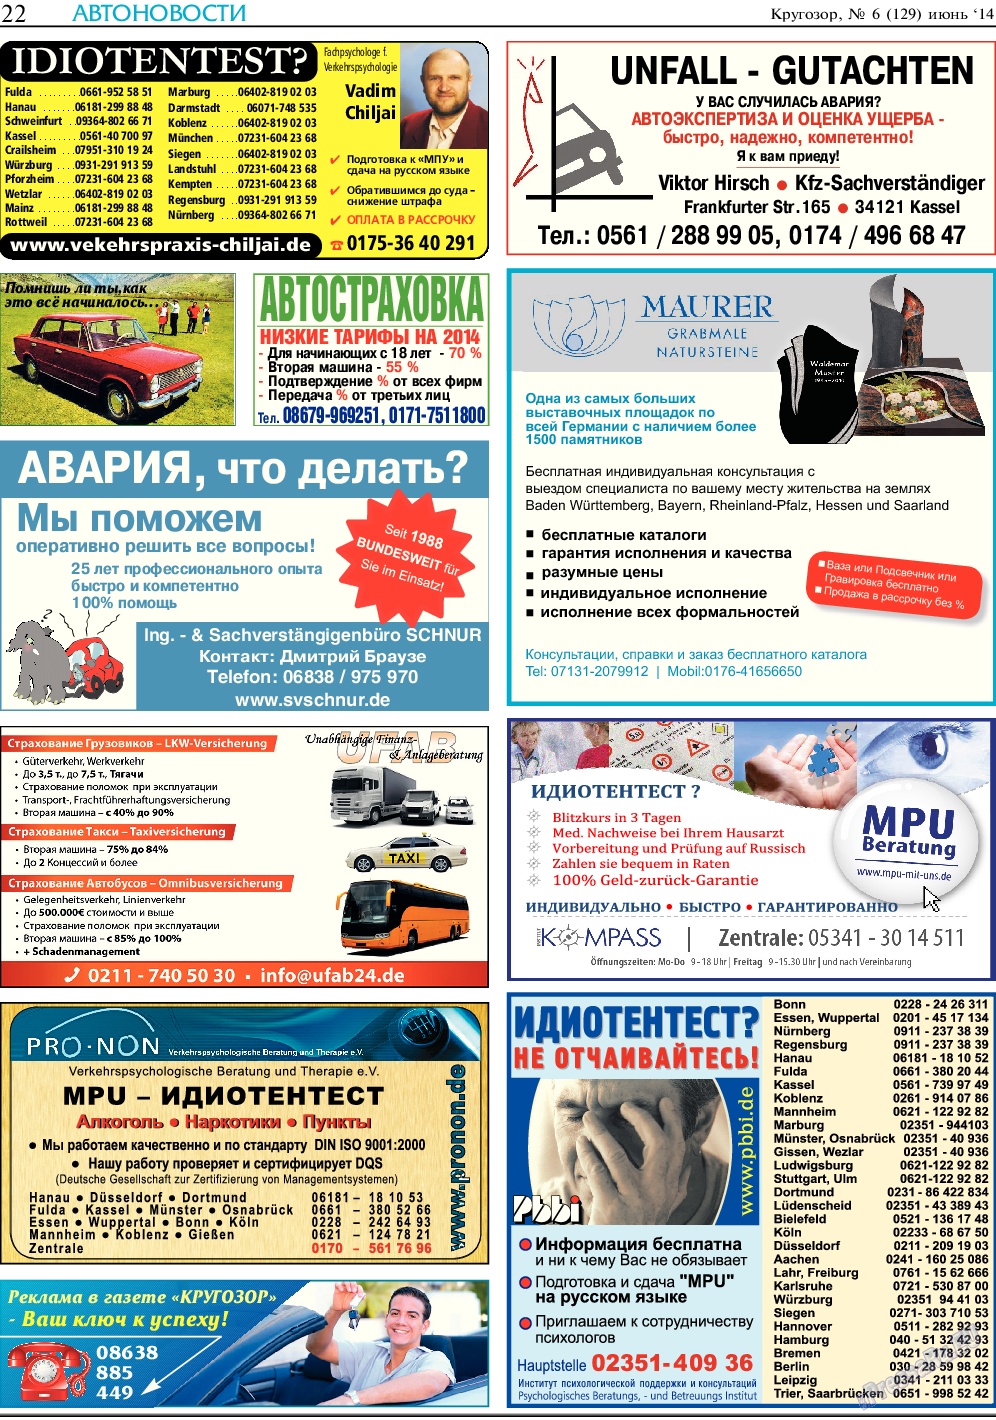 Кругозор (газета). 2014 год, номер 6, стр. 22